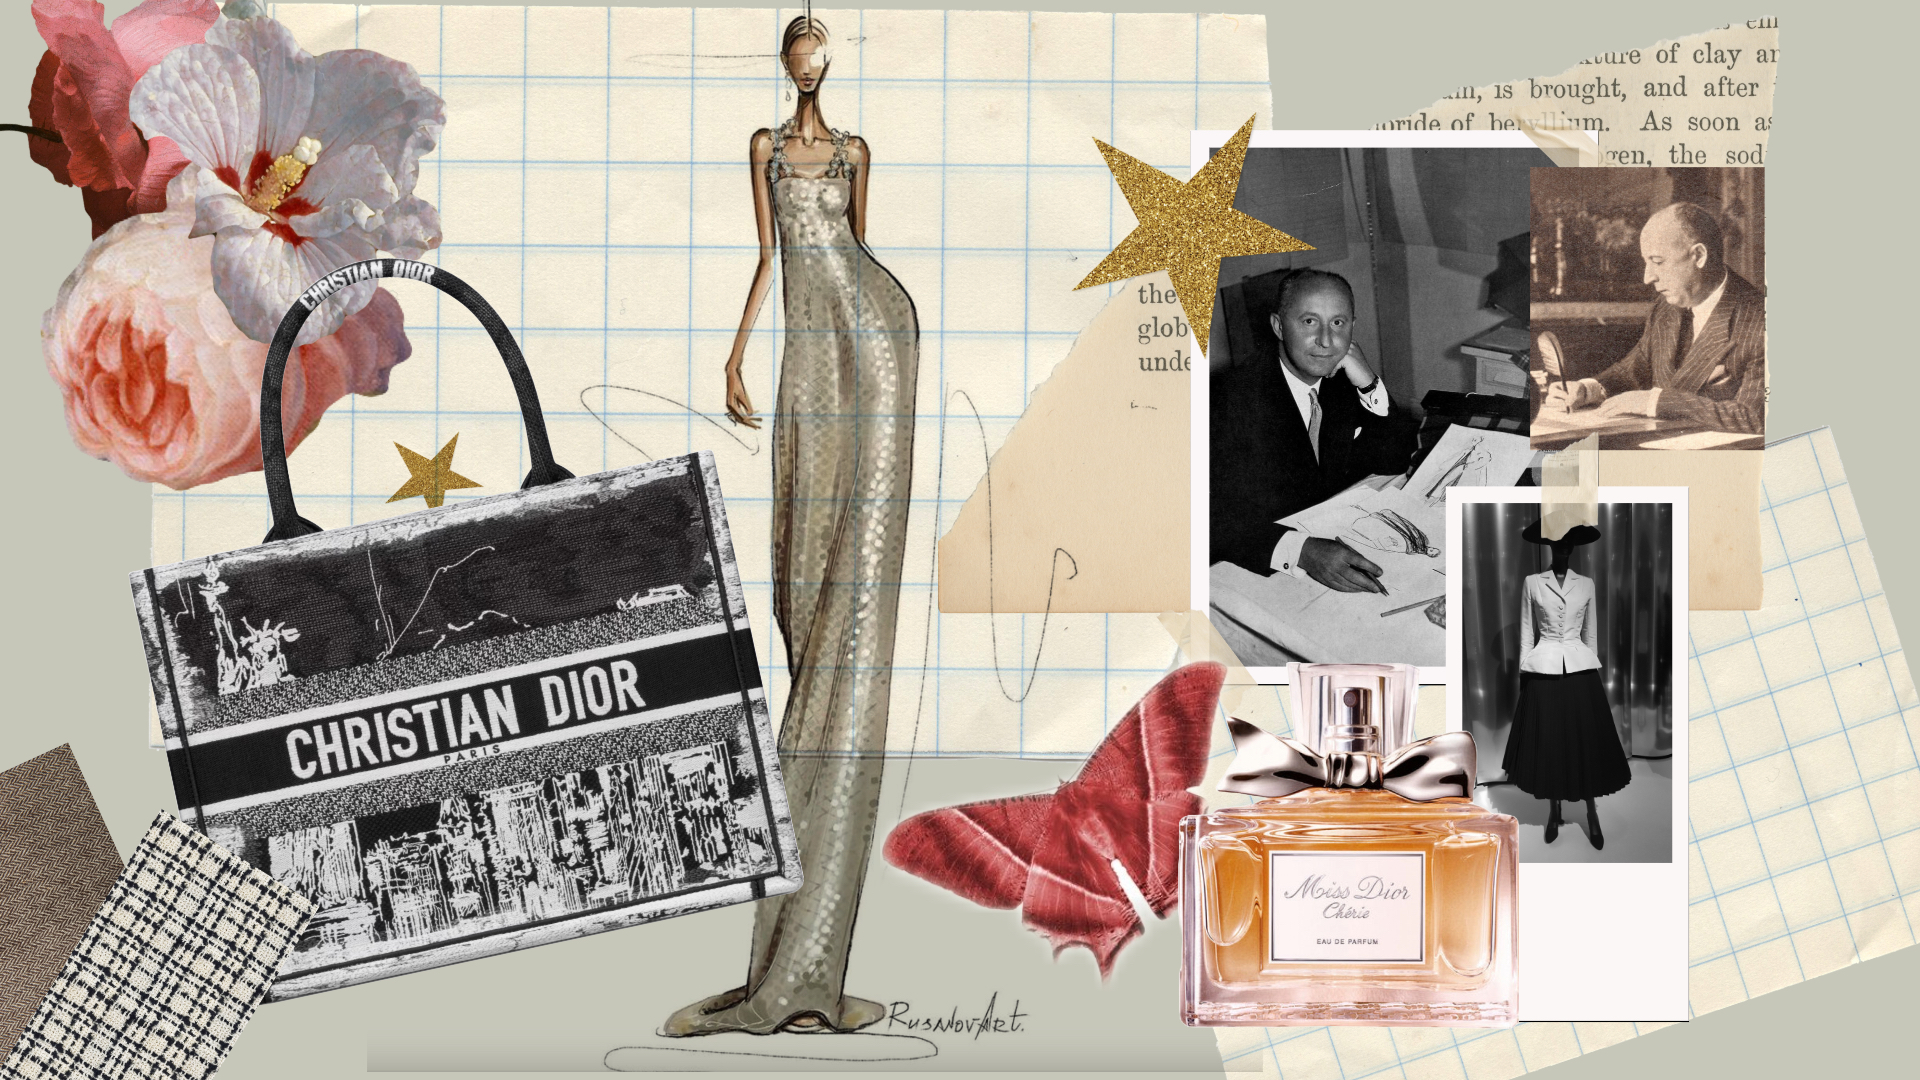 Η πορεία του εμβληματικού Christian Dior και η συγκλονιστική ιστορία της αδερφής του, που οδηγήθηκε σε στρατόπεδο συγκέντρωσης